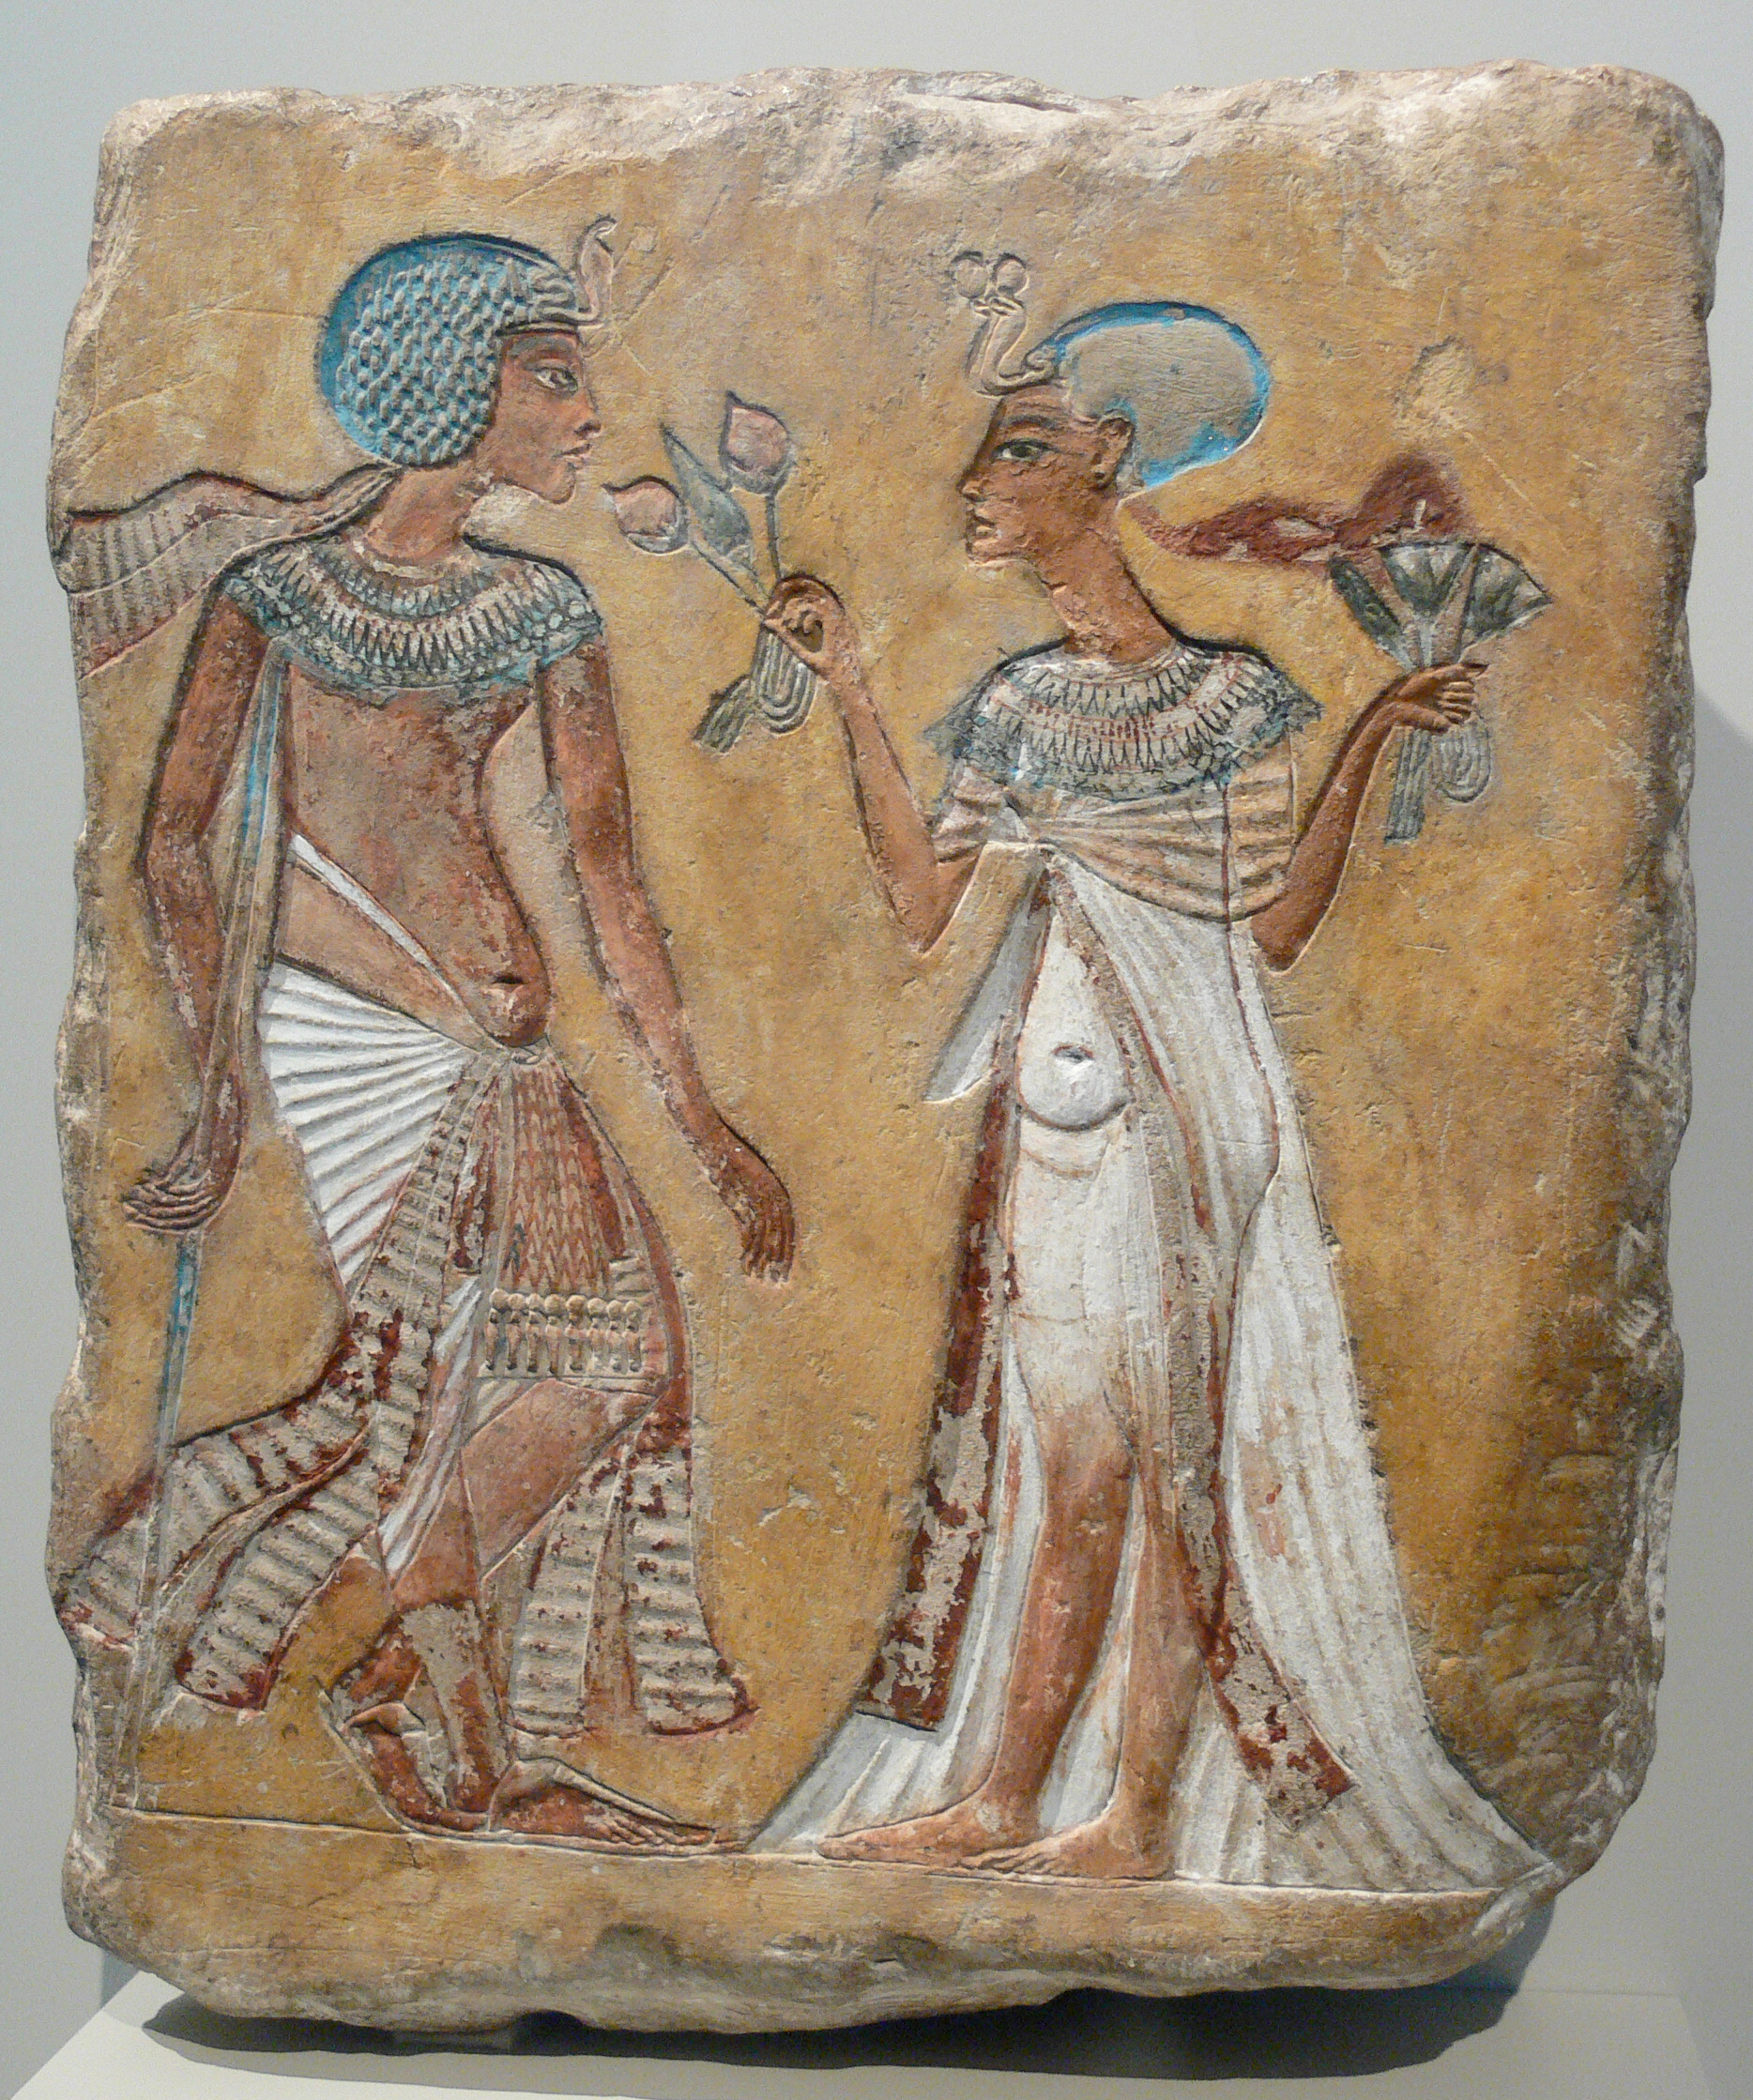 Egypt - Walk In The Garden - New Kingdom, 18th dynasty, c. 1335 BC